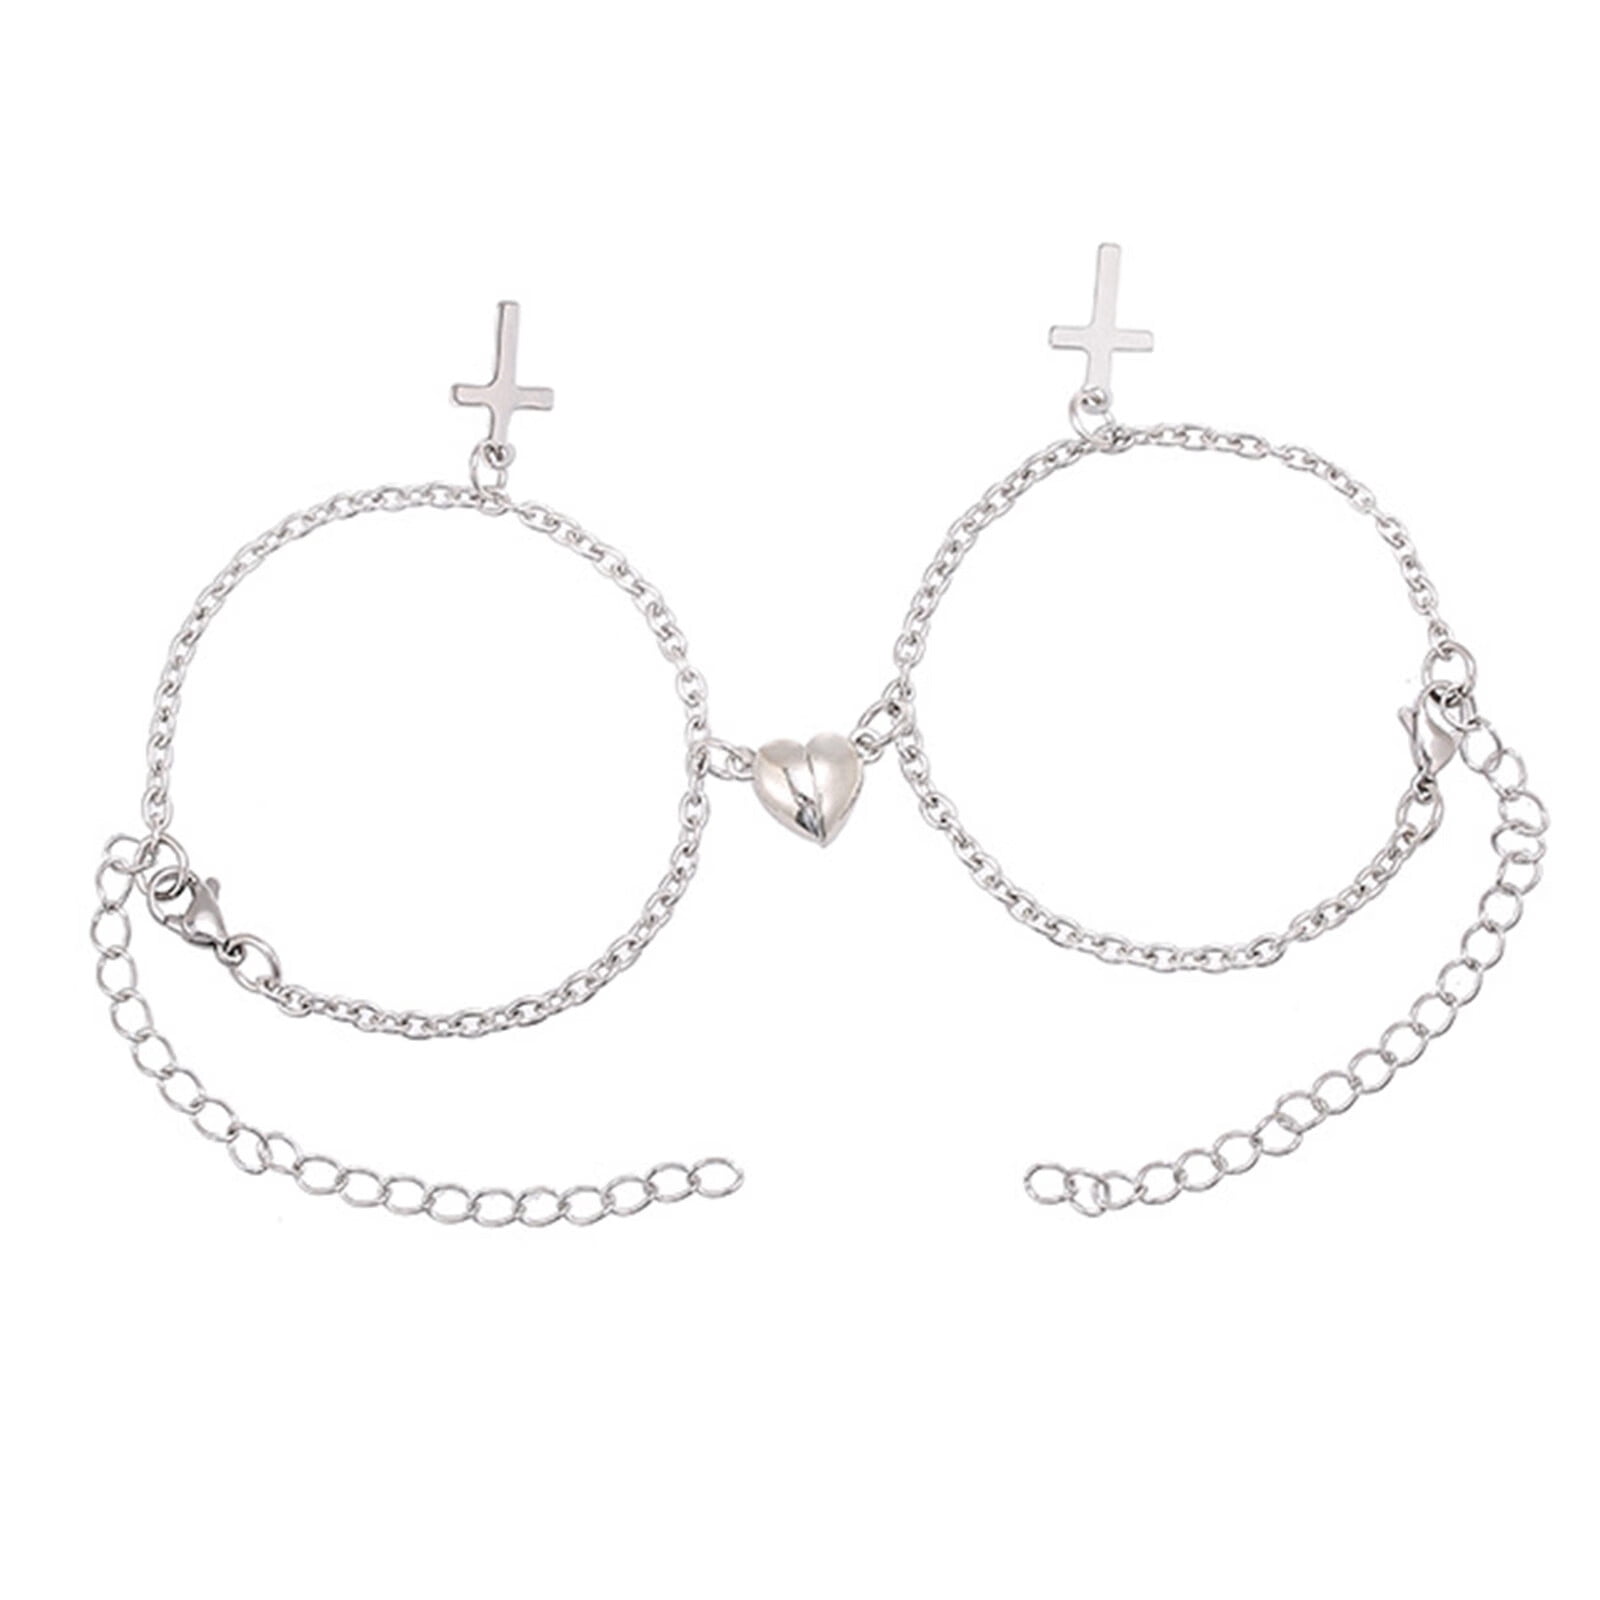 2pcs/set Fashion Titanium Steel Magnetic Heart Charm Chain Bracelet For Men  Women For Daily Decoration